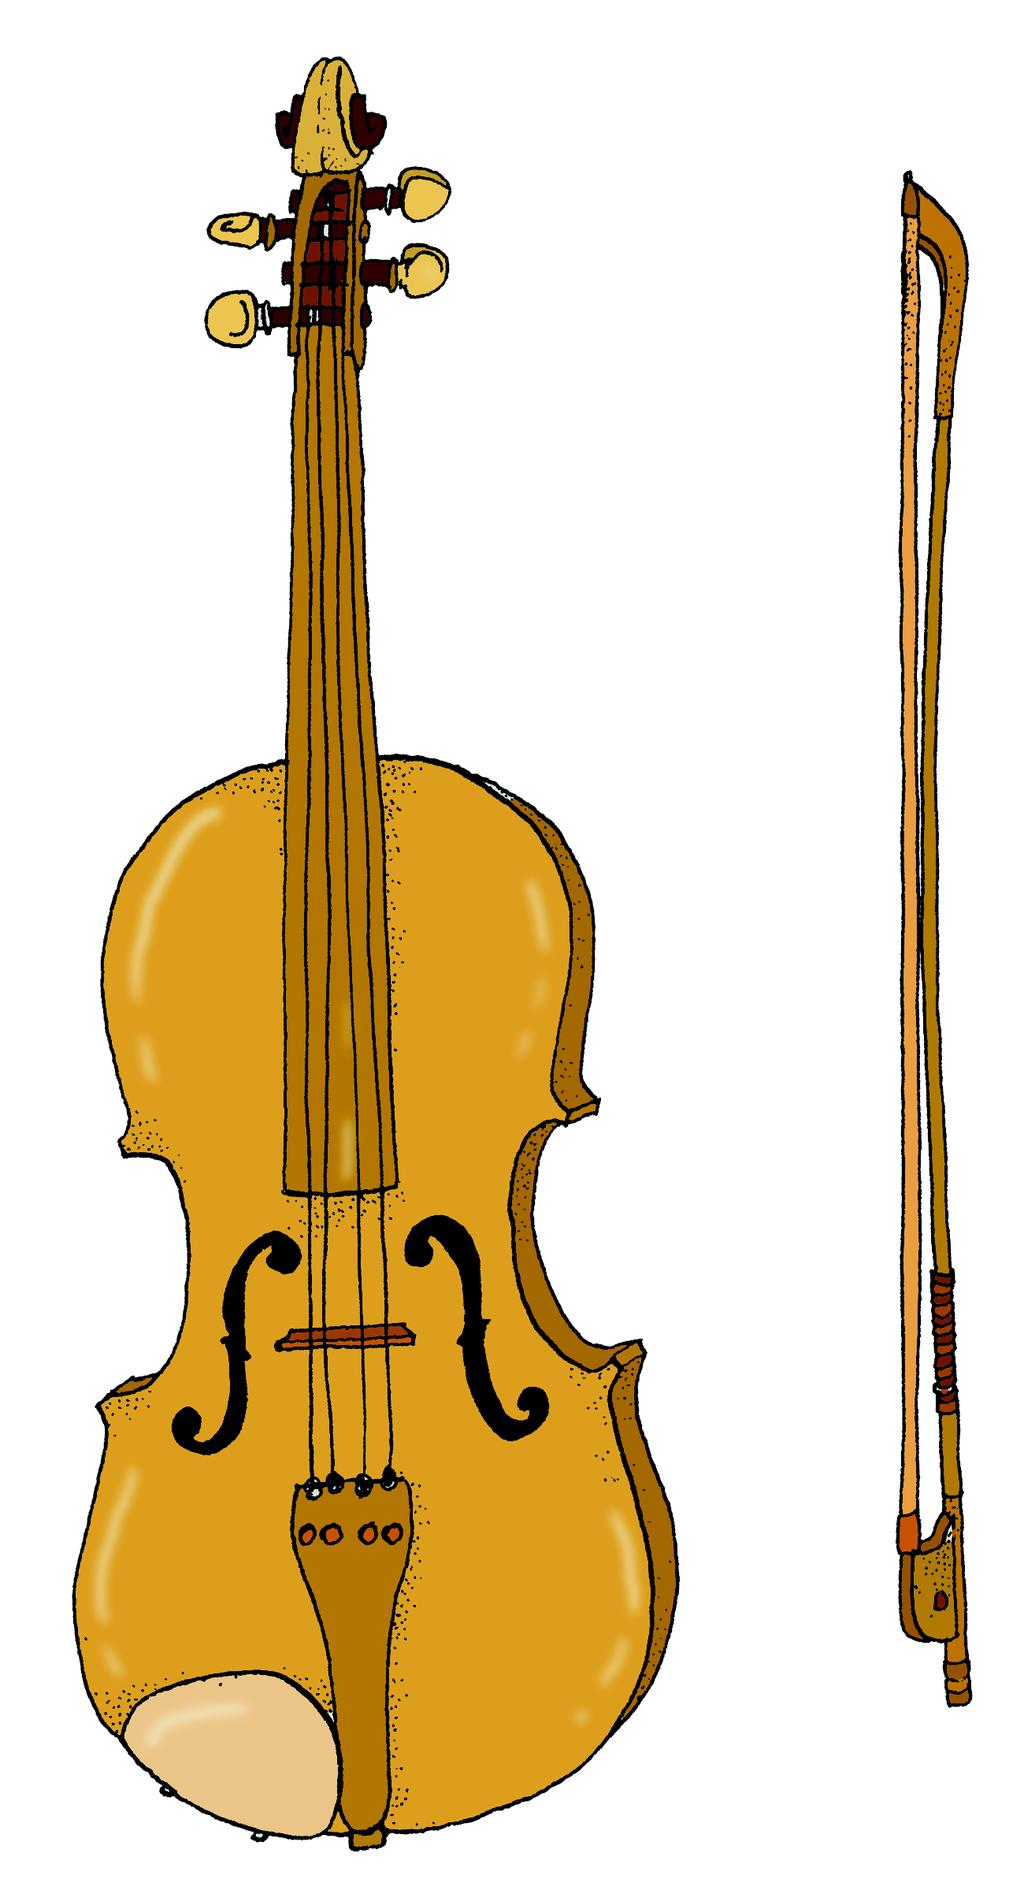 Viool De viool is een snaarinstrument met vier snaren. Hi is het kleinste lid van de vioolfamilie en kan daardoor ook de hoogste tonen voortbrengen.